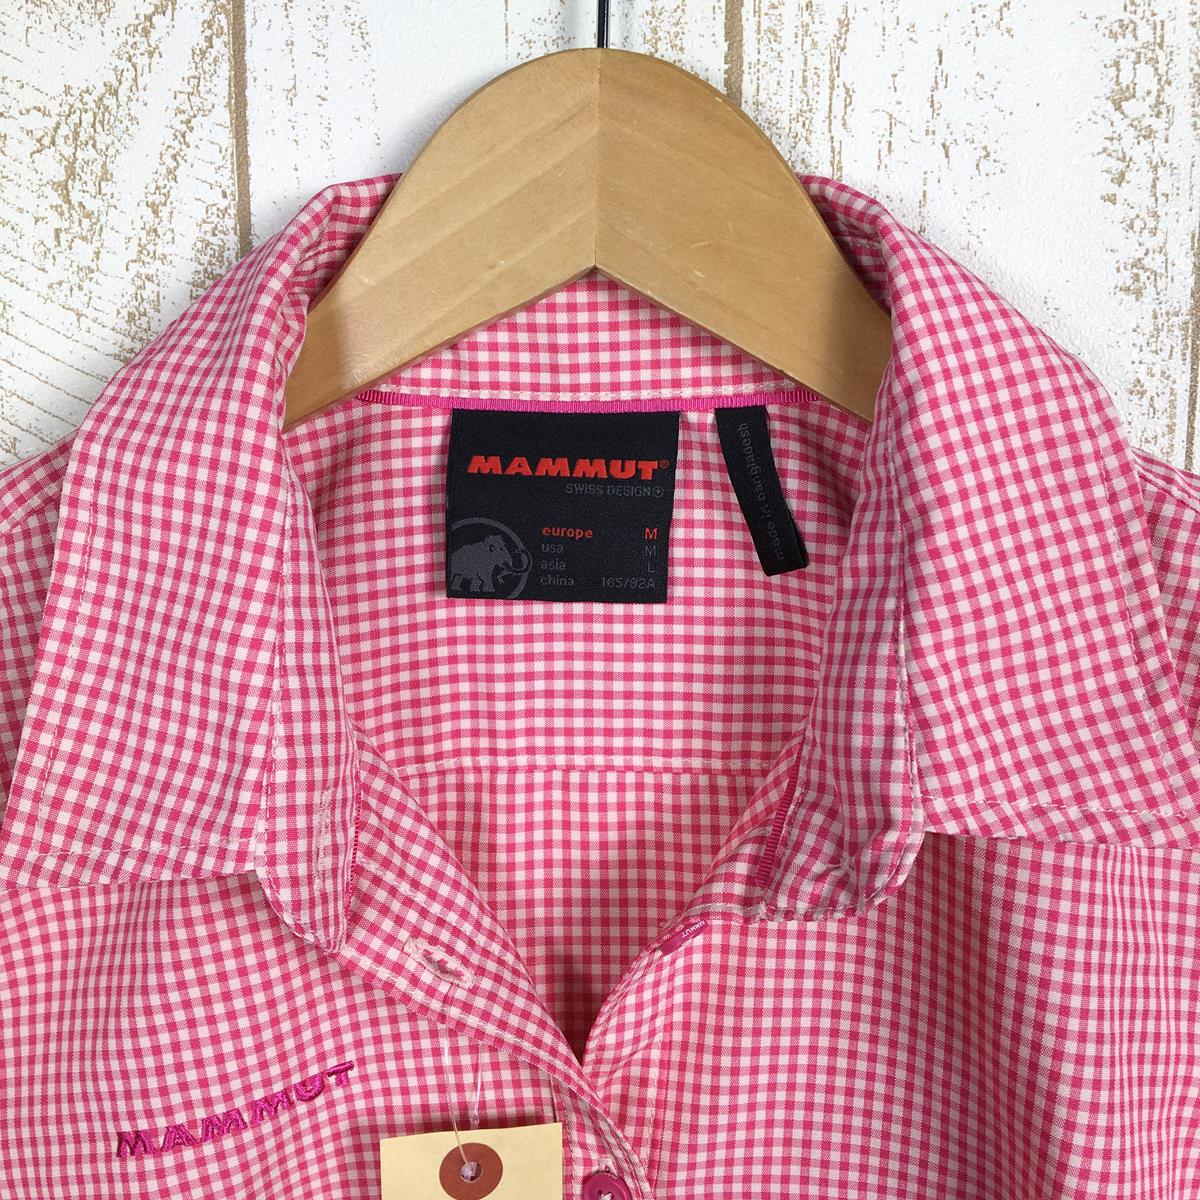 【WOMEN's M】 マムート アーダ シャツ Aada Shirt ショートスリーブ MAMMUT 1015-00021 ピンク系